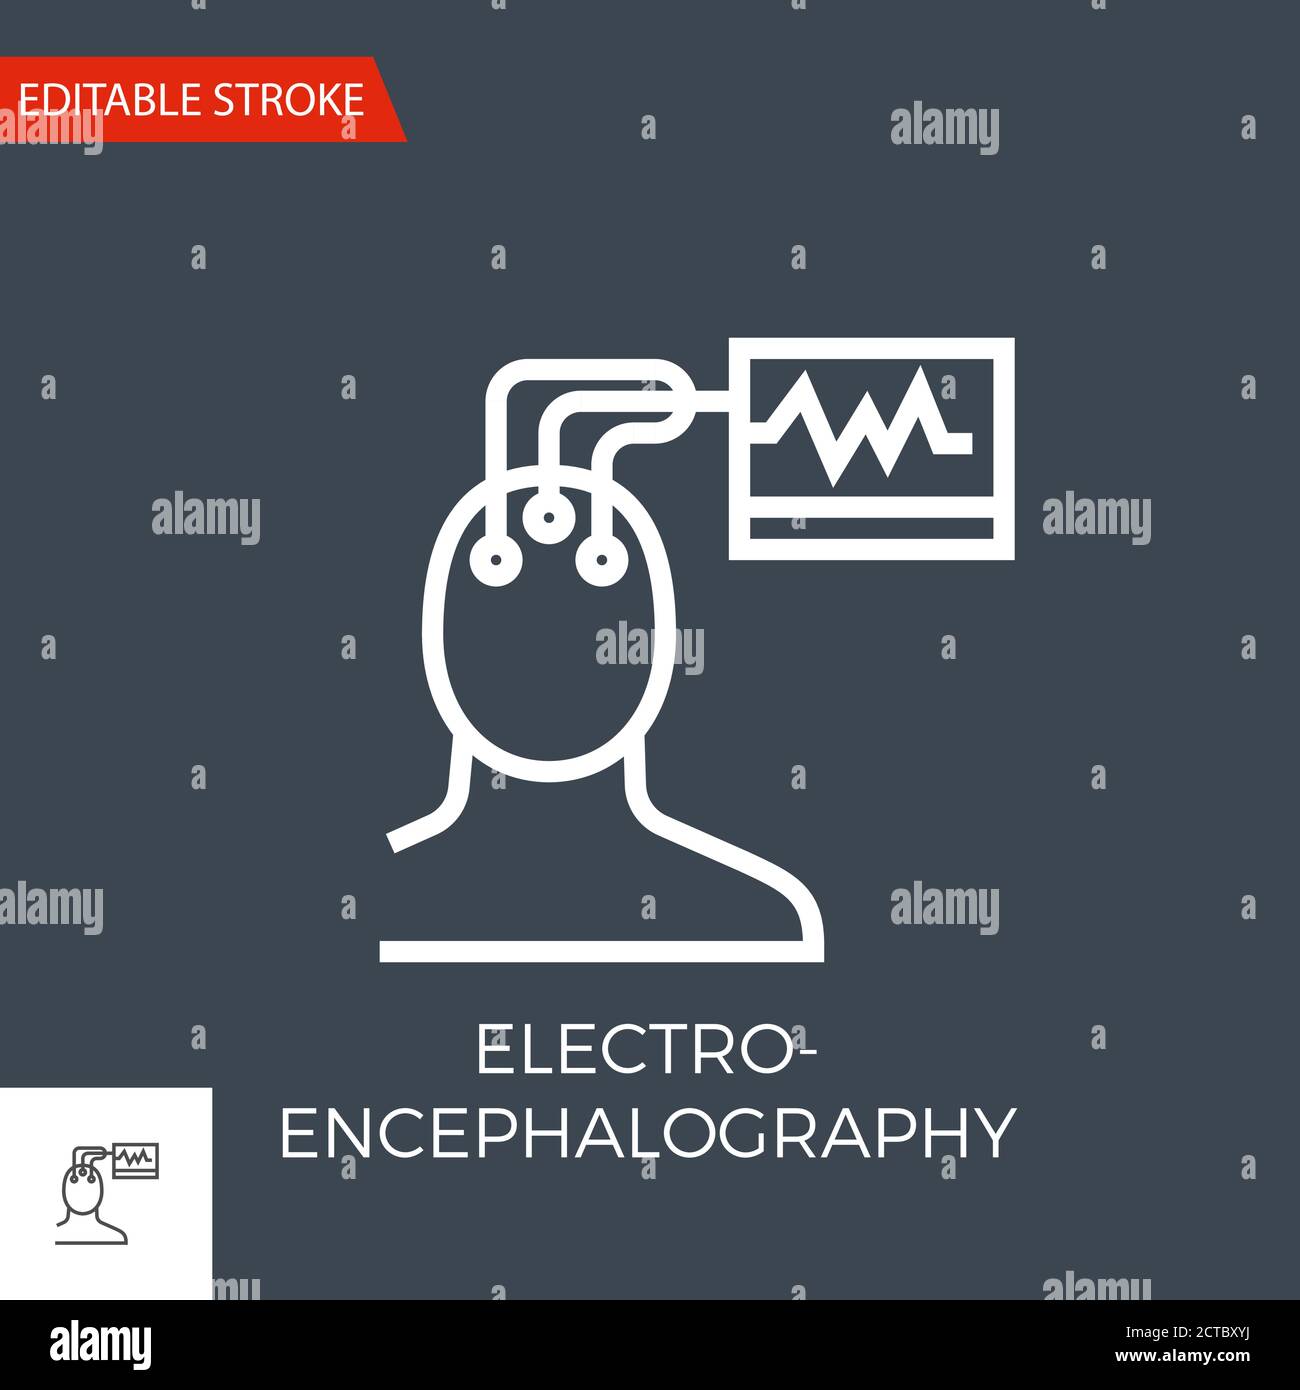 Electroencephalography Vector Icon Stock Vector